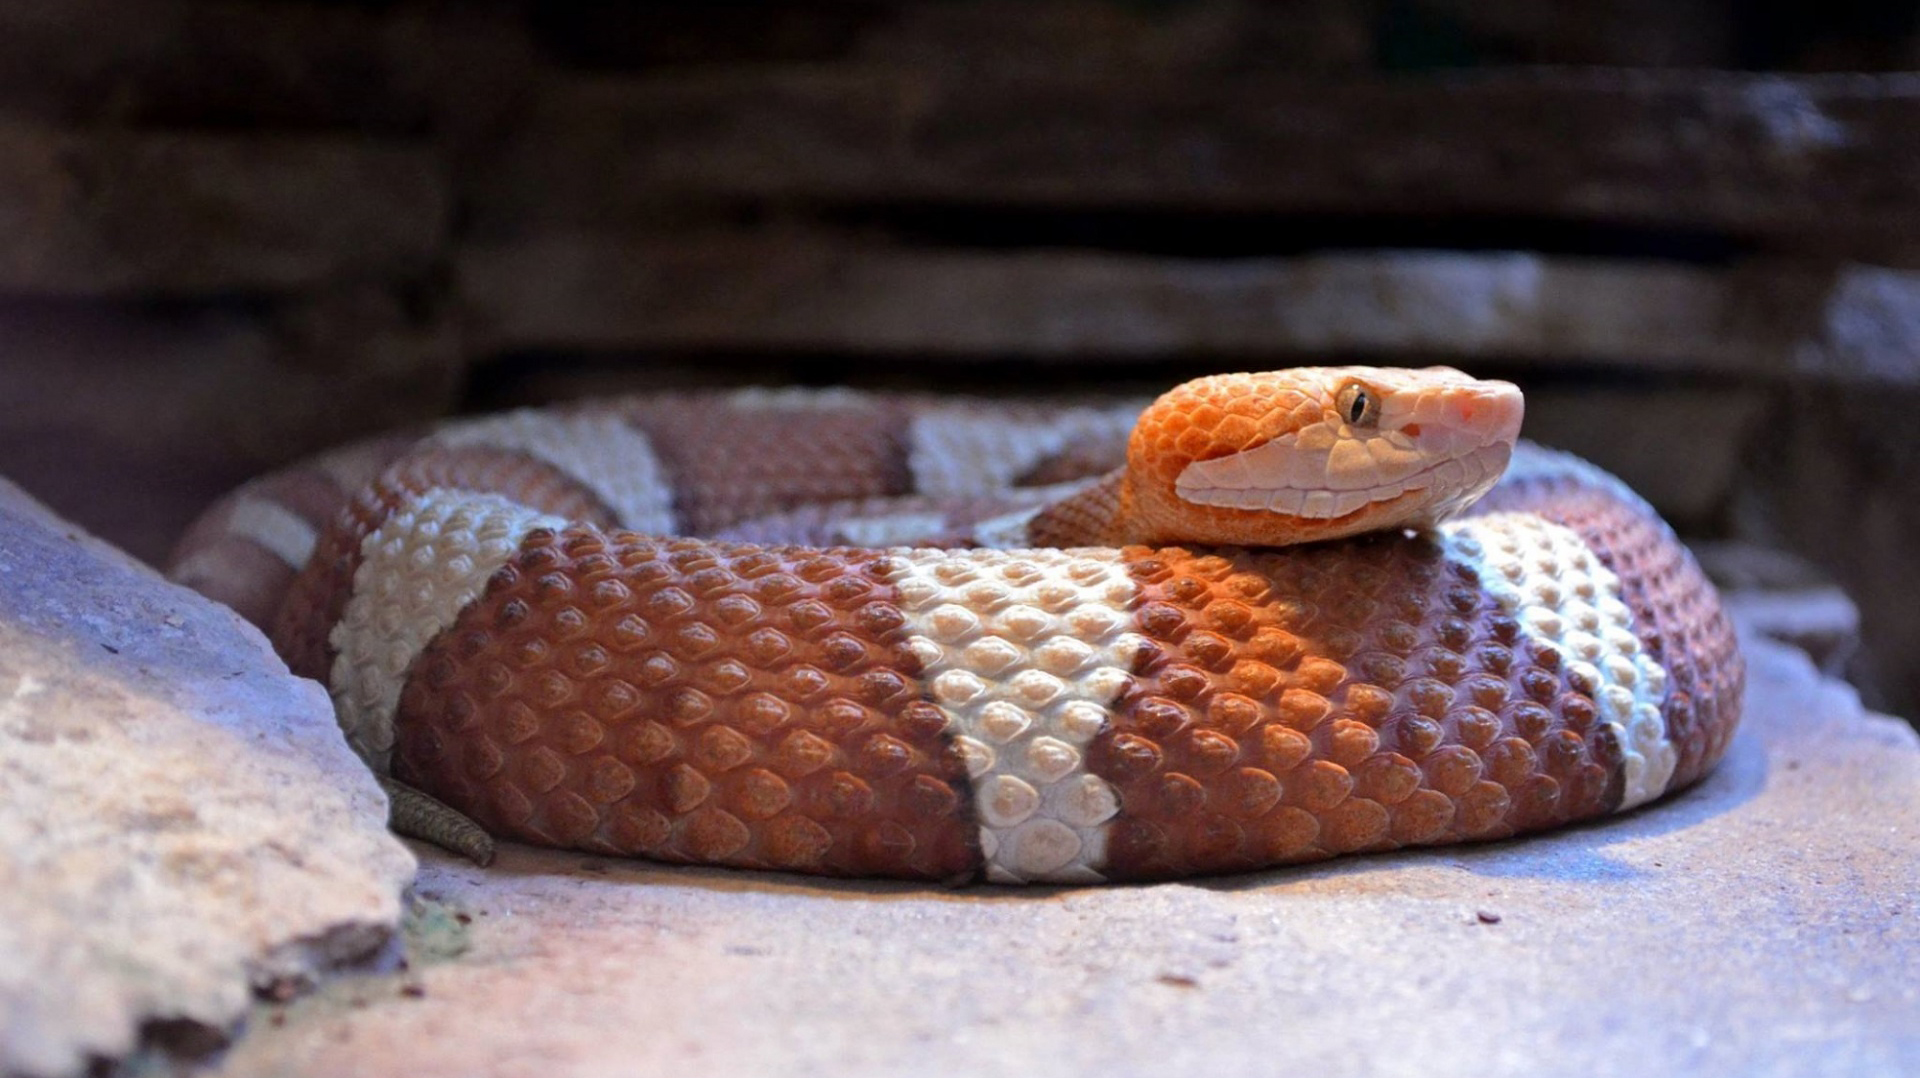 铜斑蛇蛇